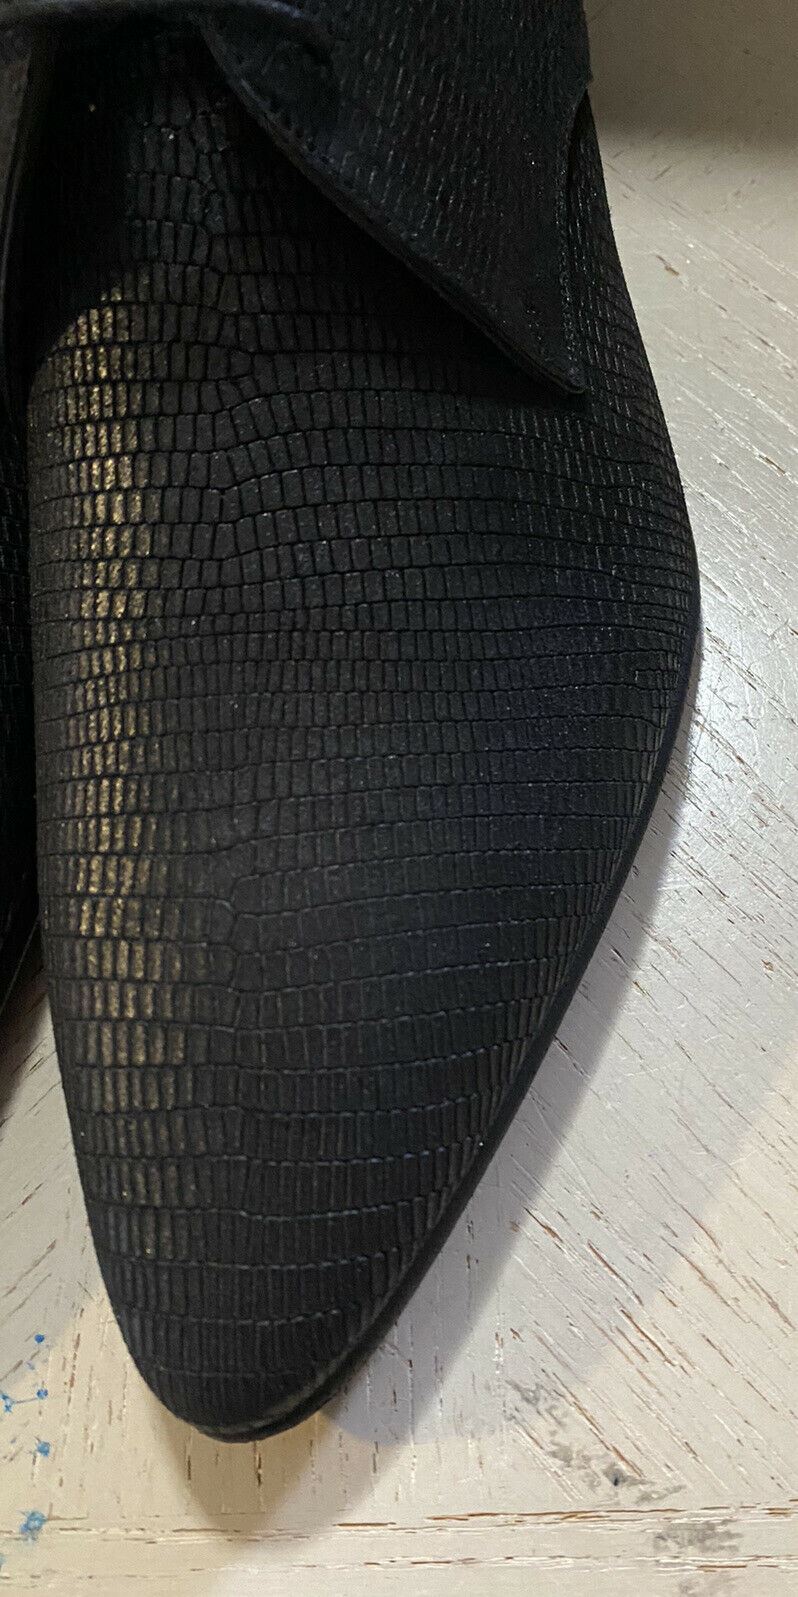 NIB $845 Saint Lauren Men’s Leather Dress Shoes Black 9 US / 42 Eu Italy